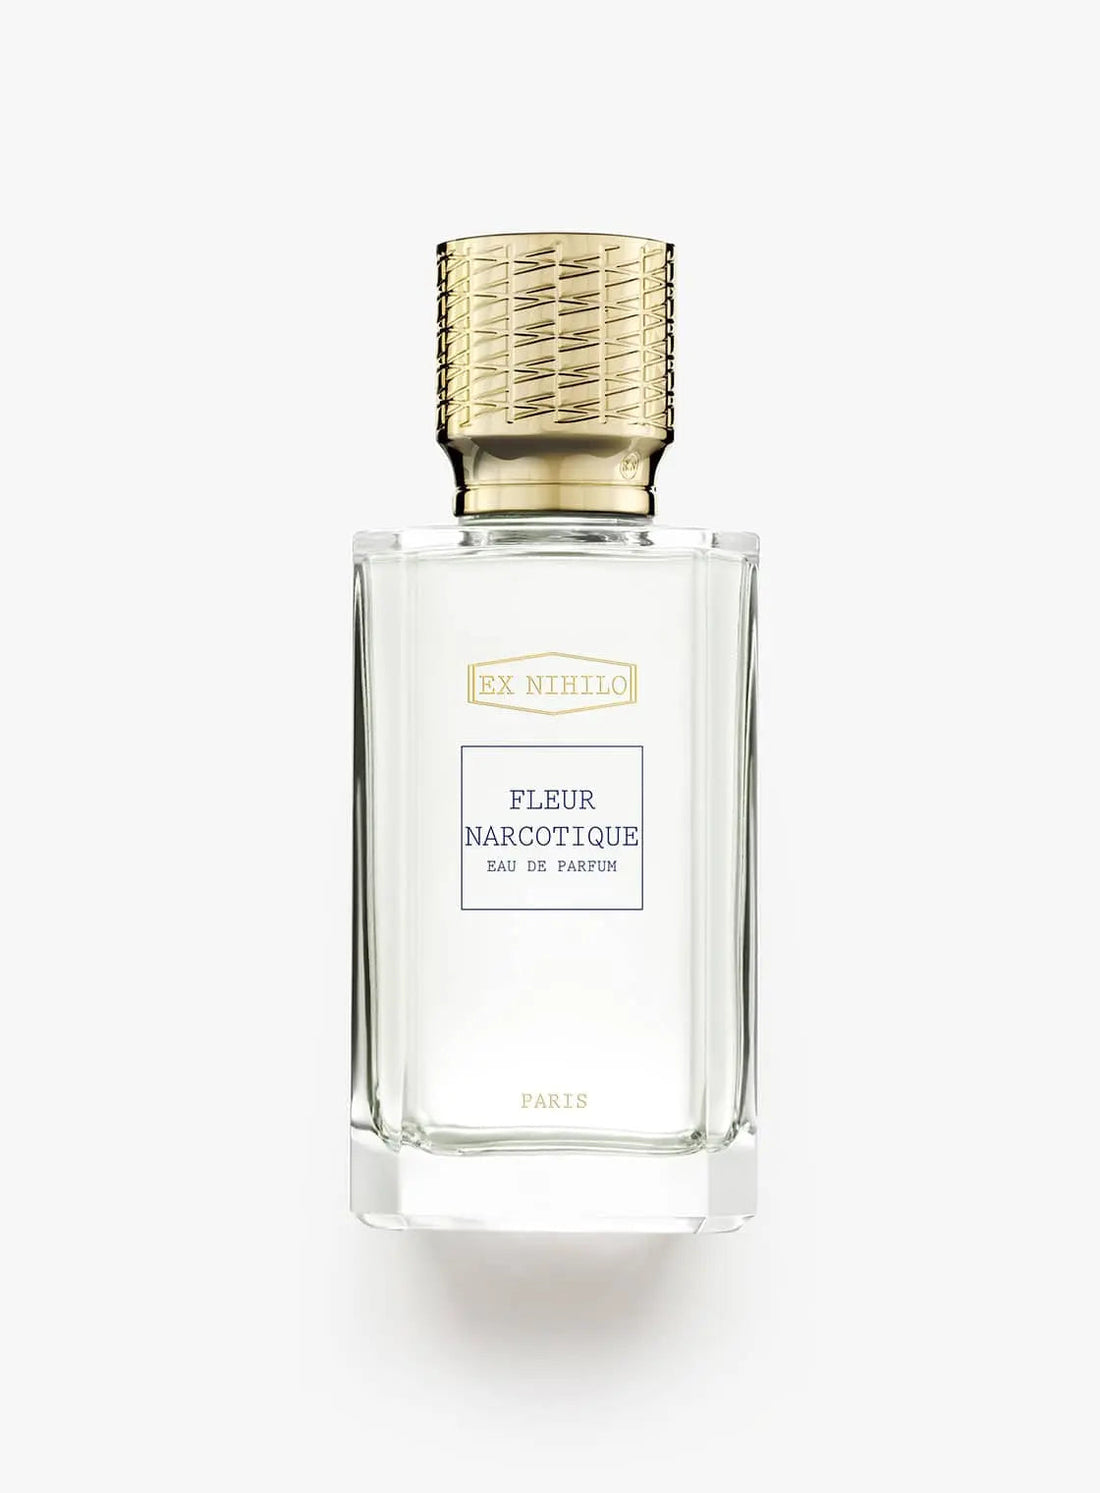 Ex nihilo Fleur Narcotique Eau de Parfum – 30 ml 10-Jahres-Edition